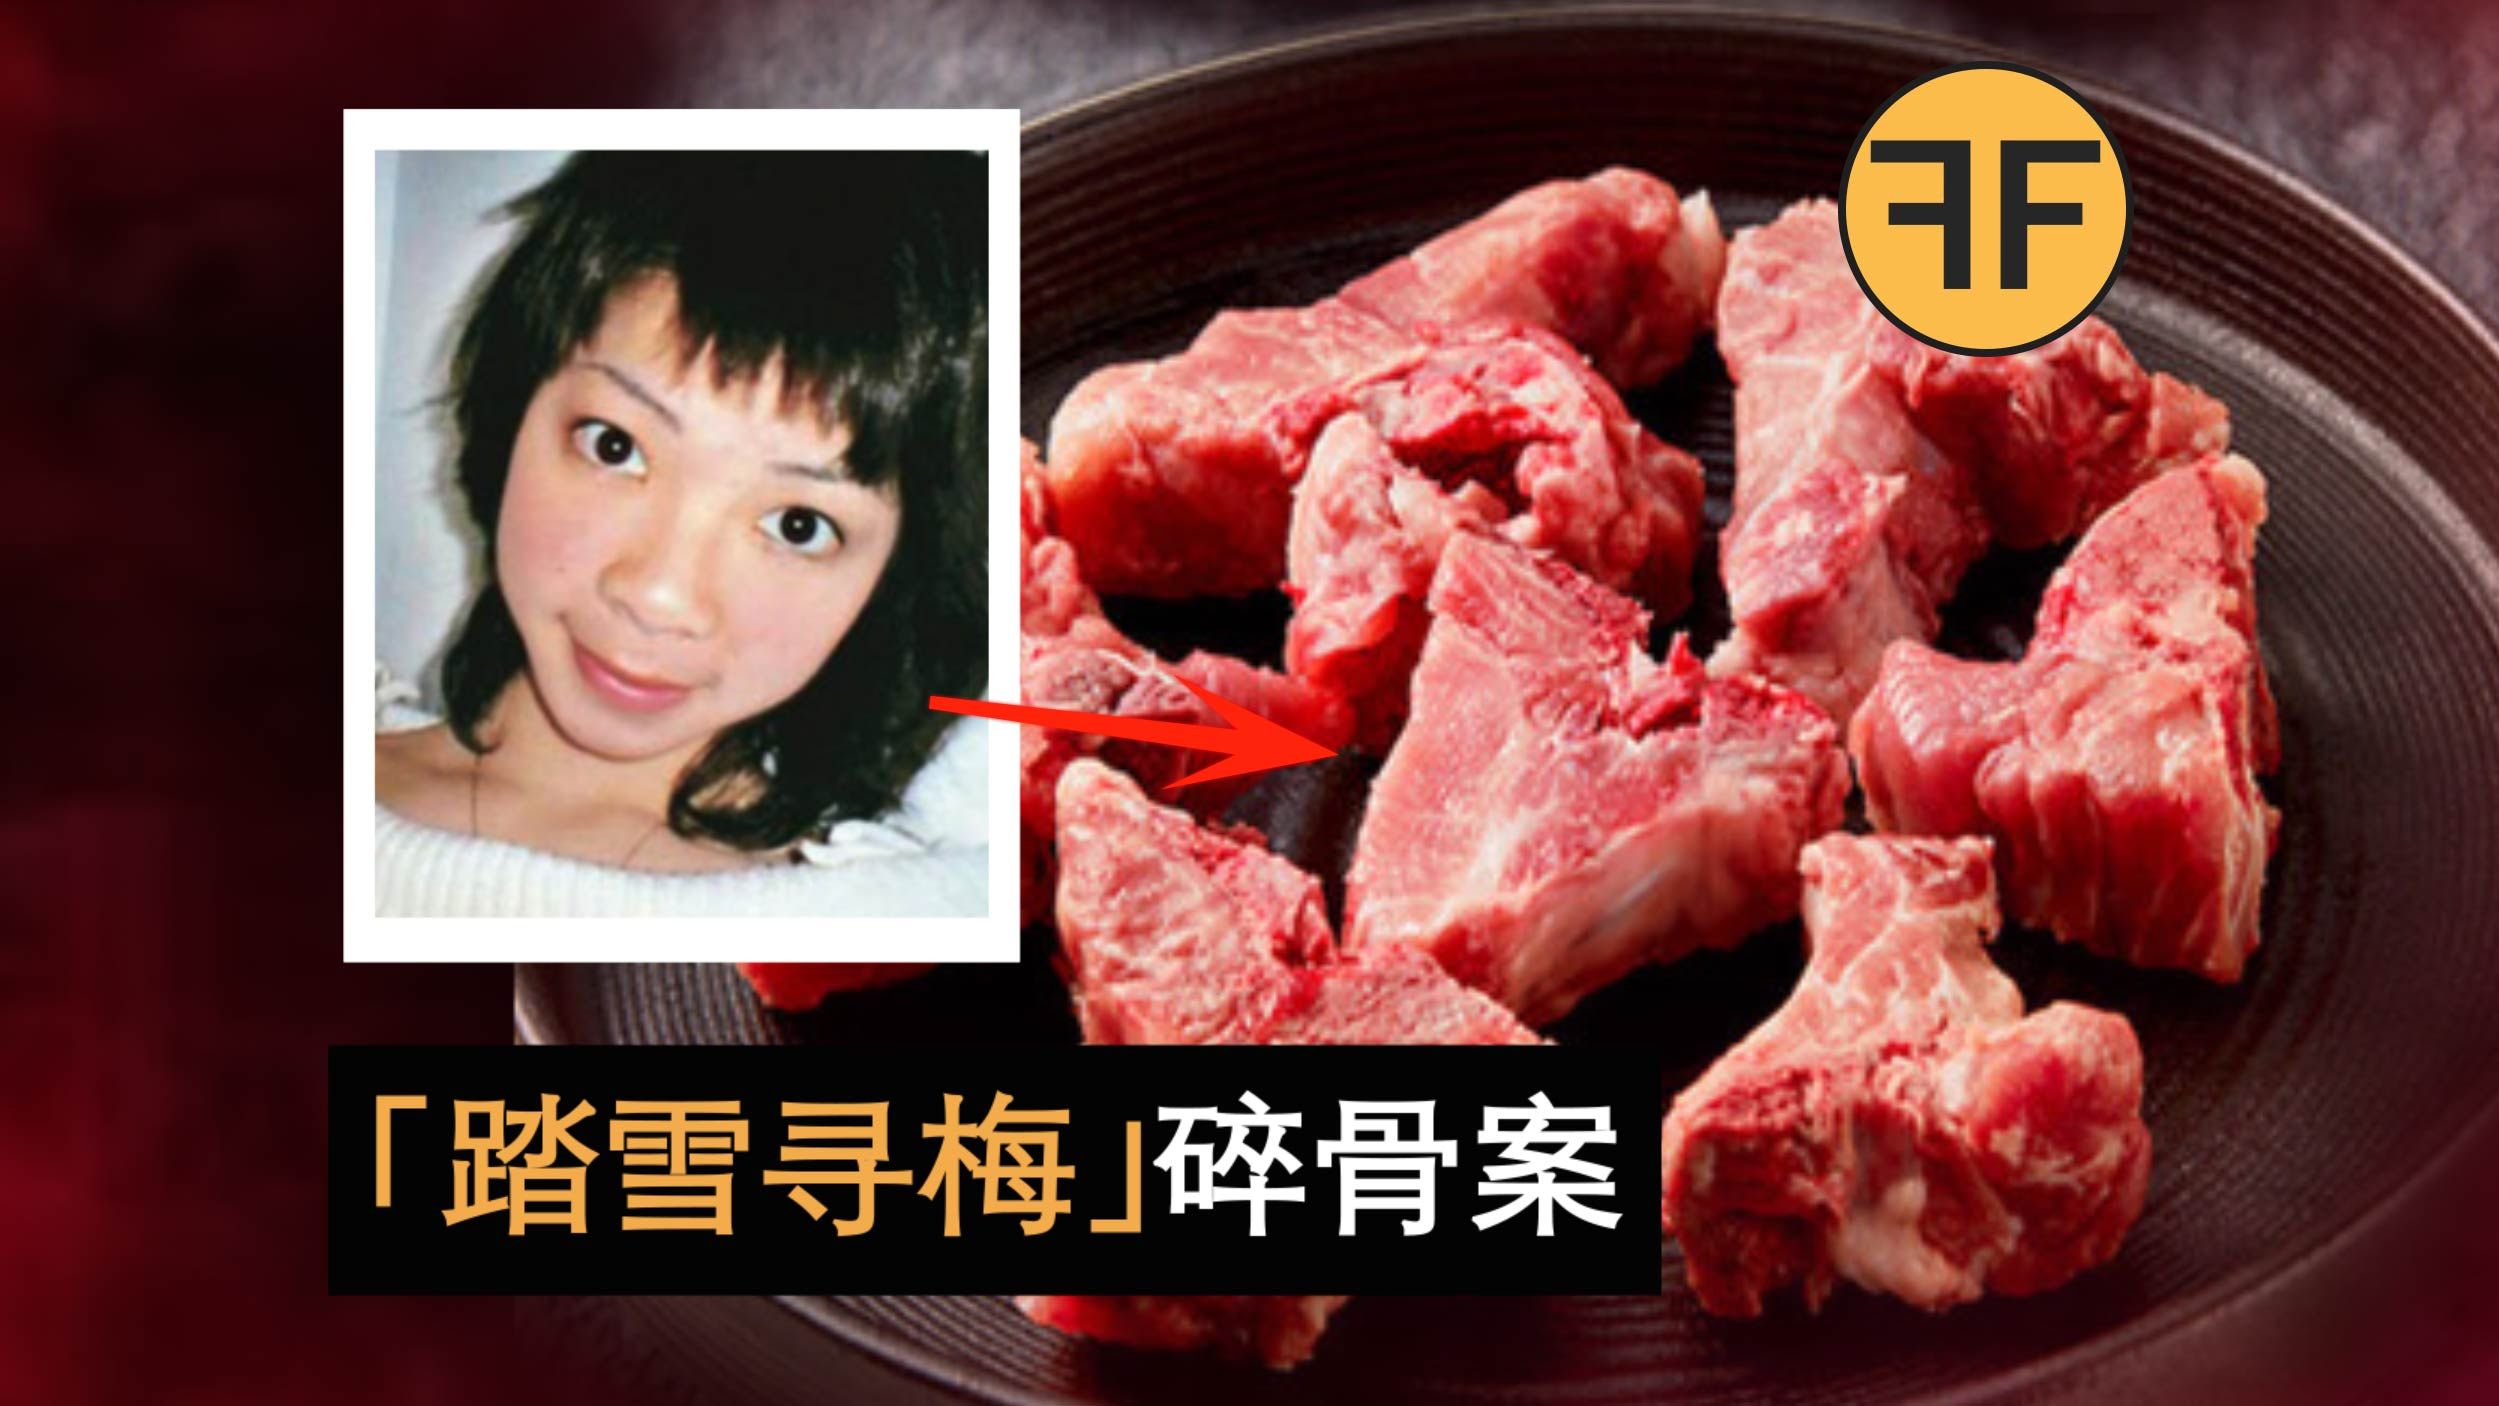 香港新10大奇案，女子失踪第2天肉摊上多了鲜美“小猪骨”，踏雪寻梅事件